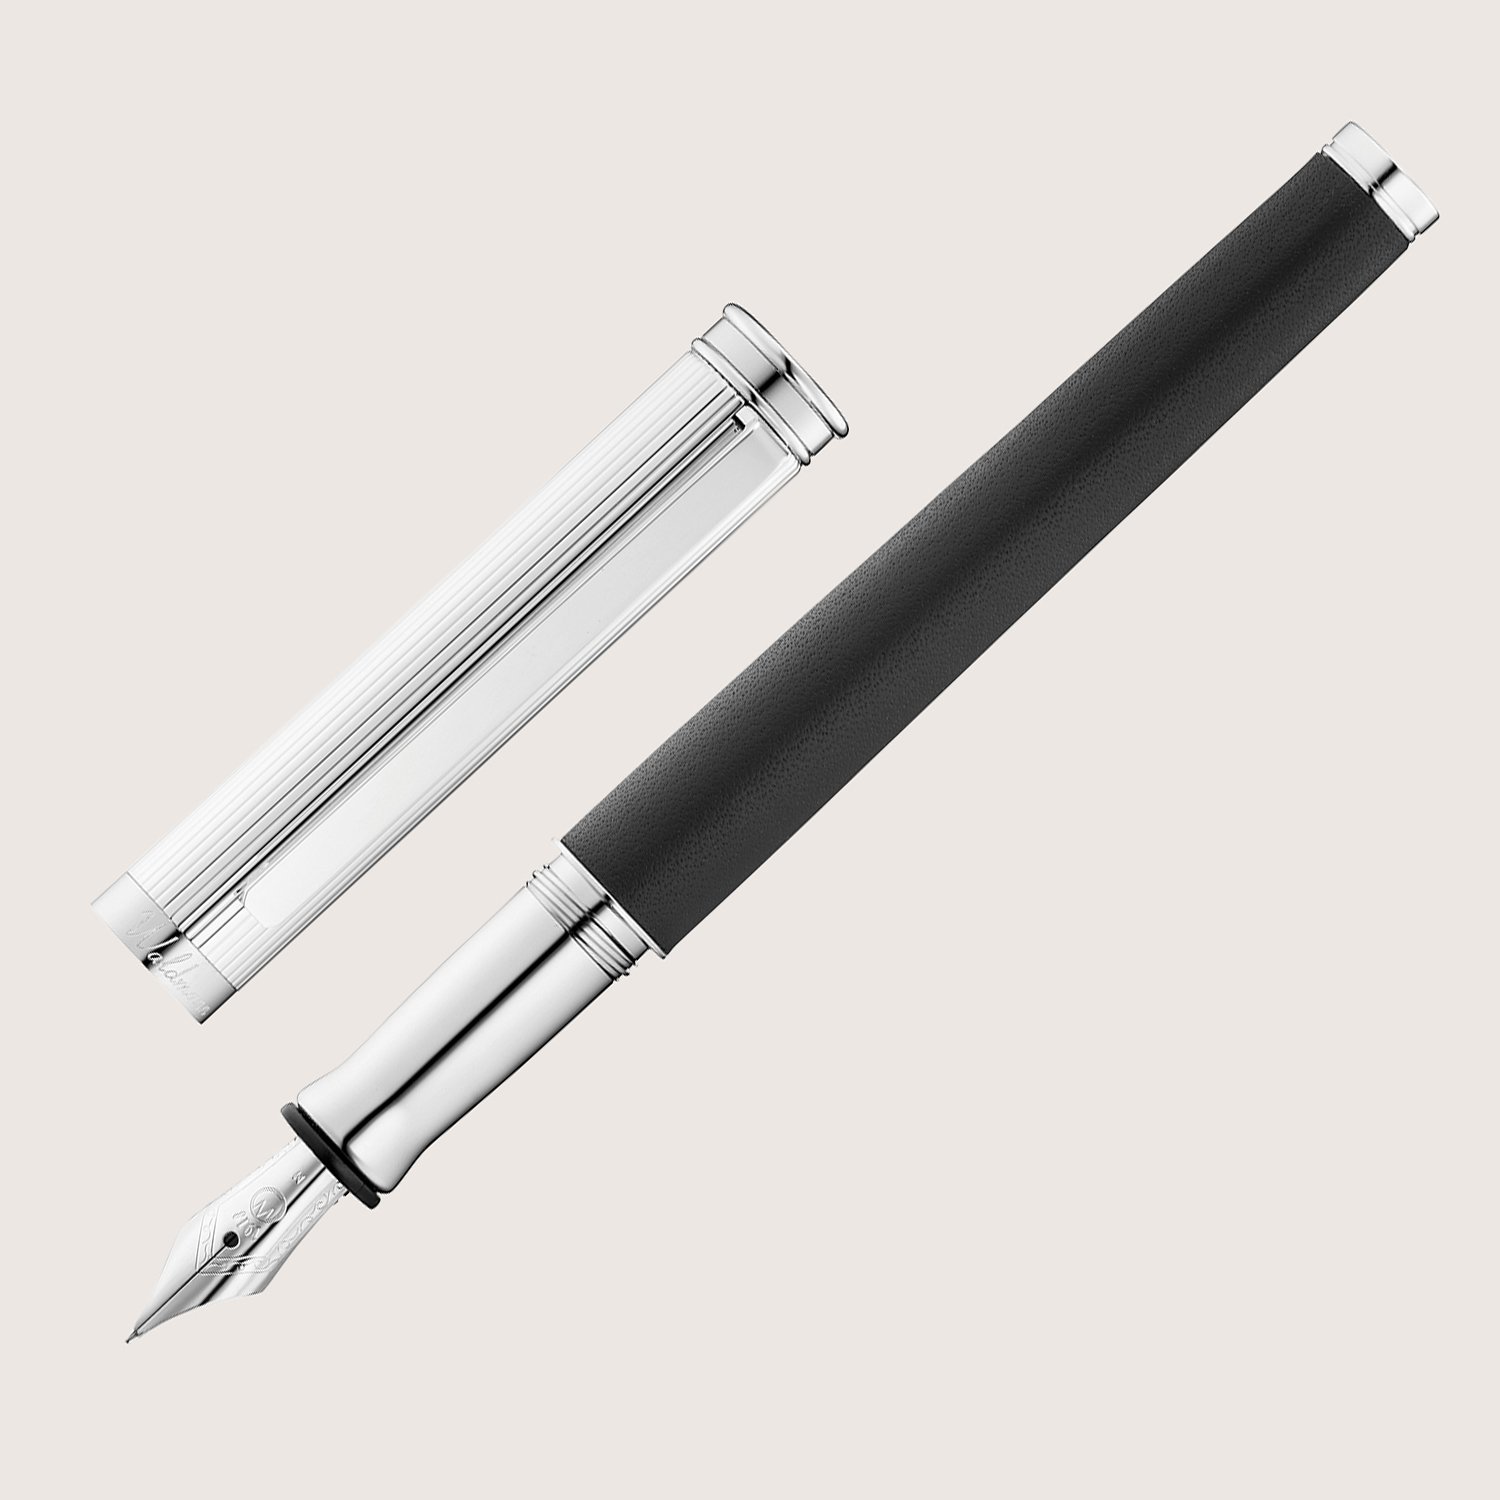 SOLON Füllfederhalter mit Edelstahlfeder F Silber Linien-Design Nappaleder schwarz